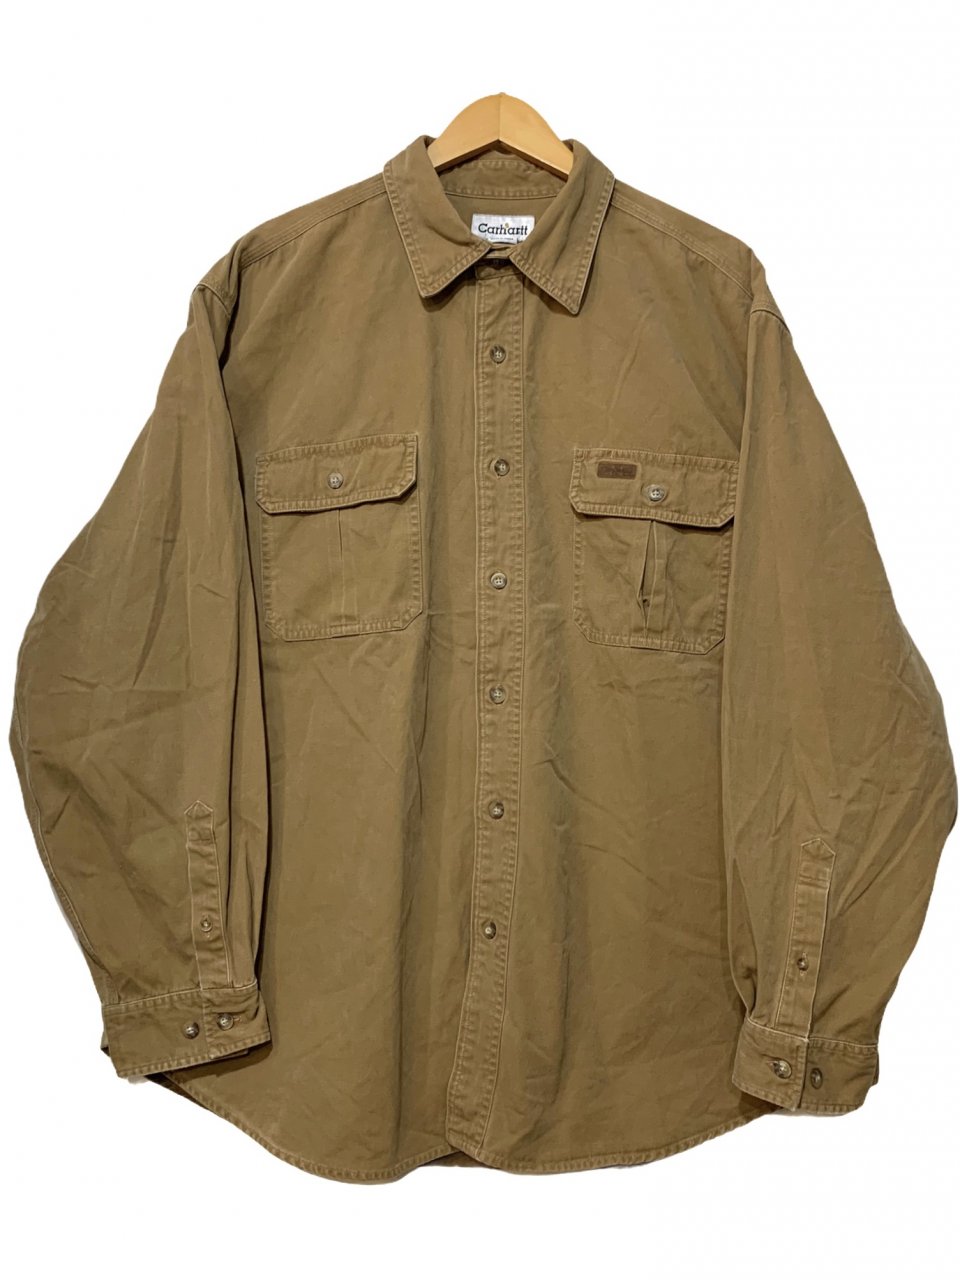 05年製 Carhartt Heavy Cotton L/S Shirt 茶 XL 00s カーハート 長袖 